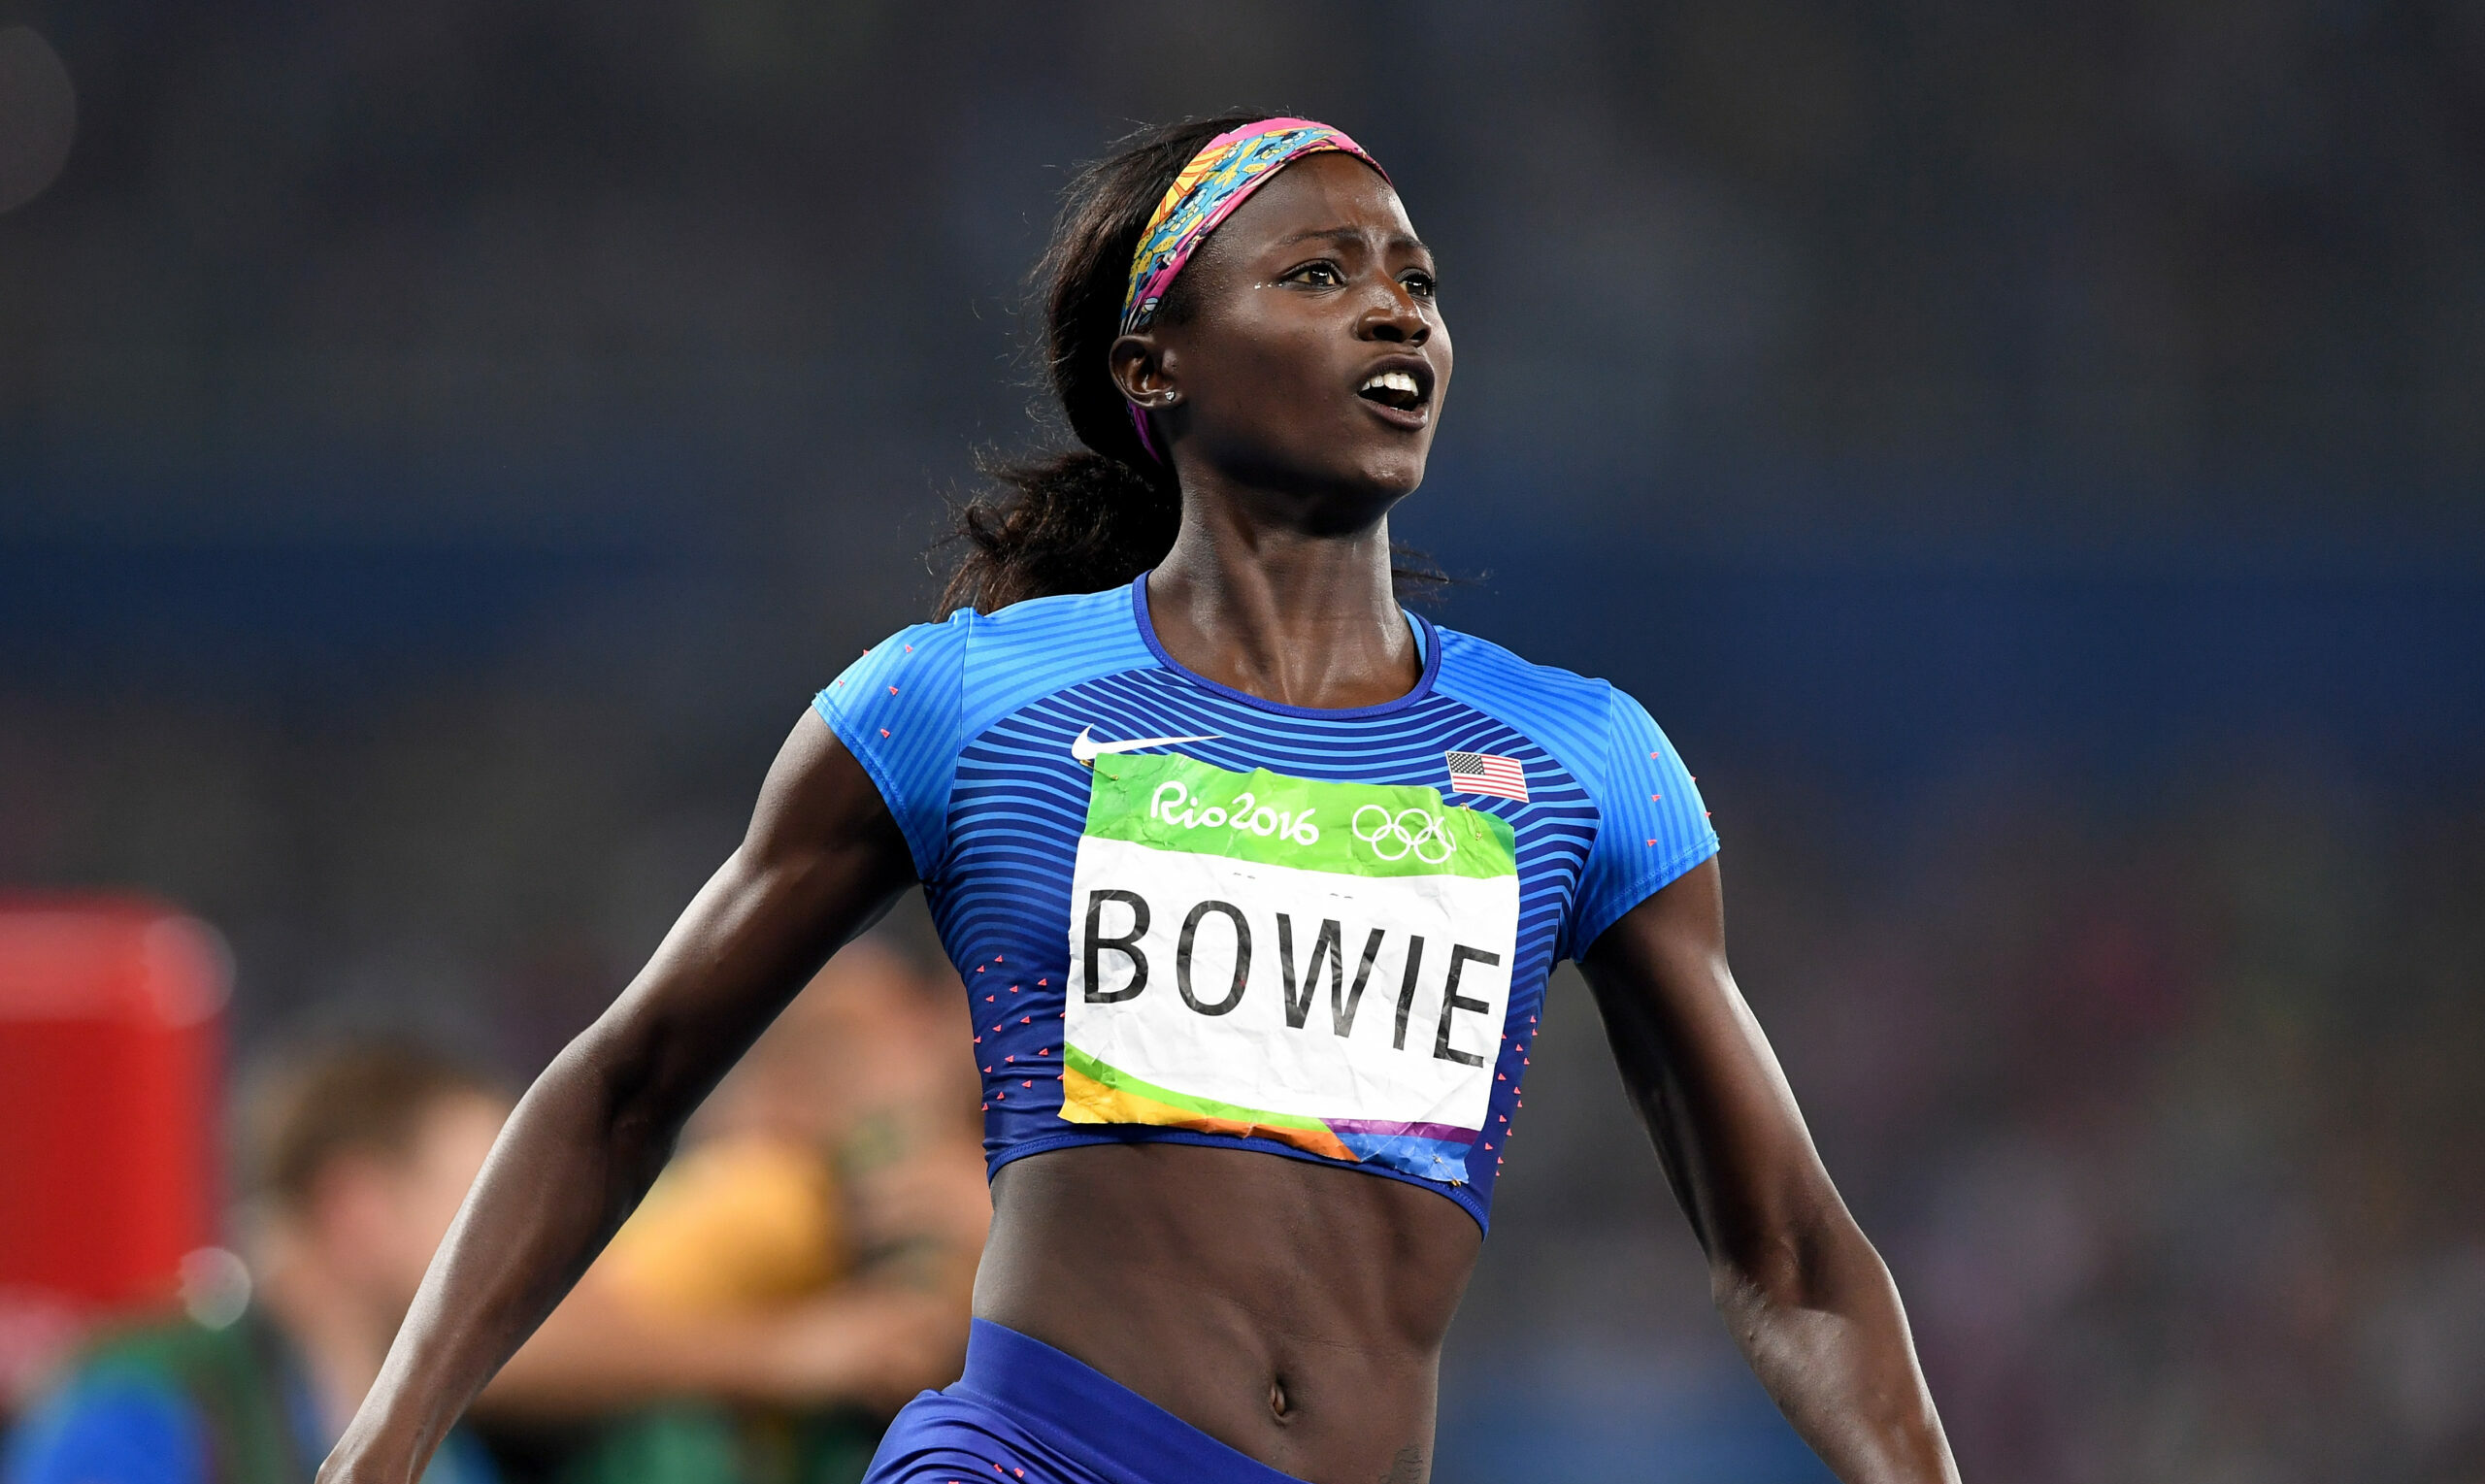 Medalhista olímpica Tori Bowie, de 32 anos, tem causa da morte revelada; saiba detalhes